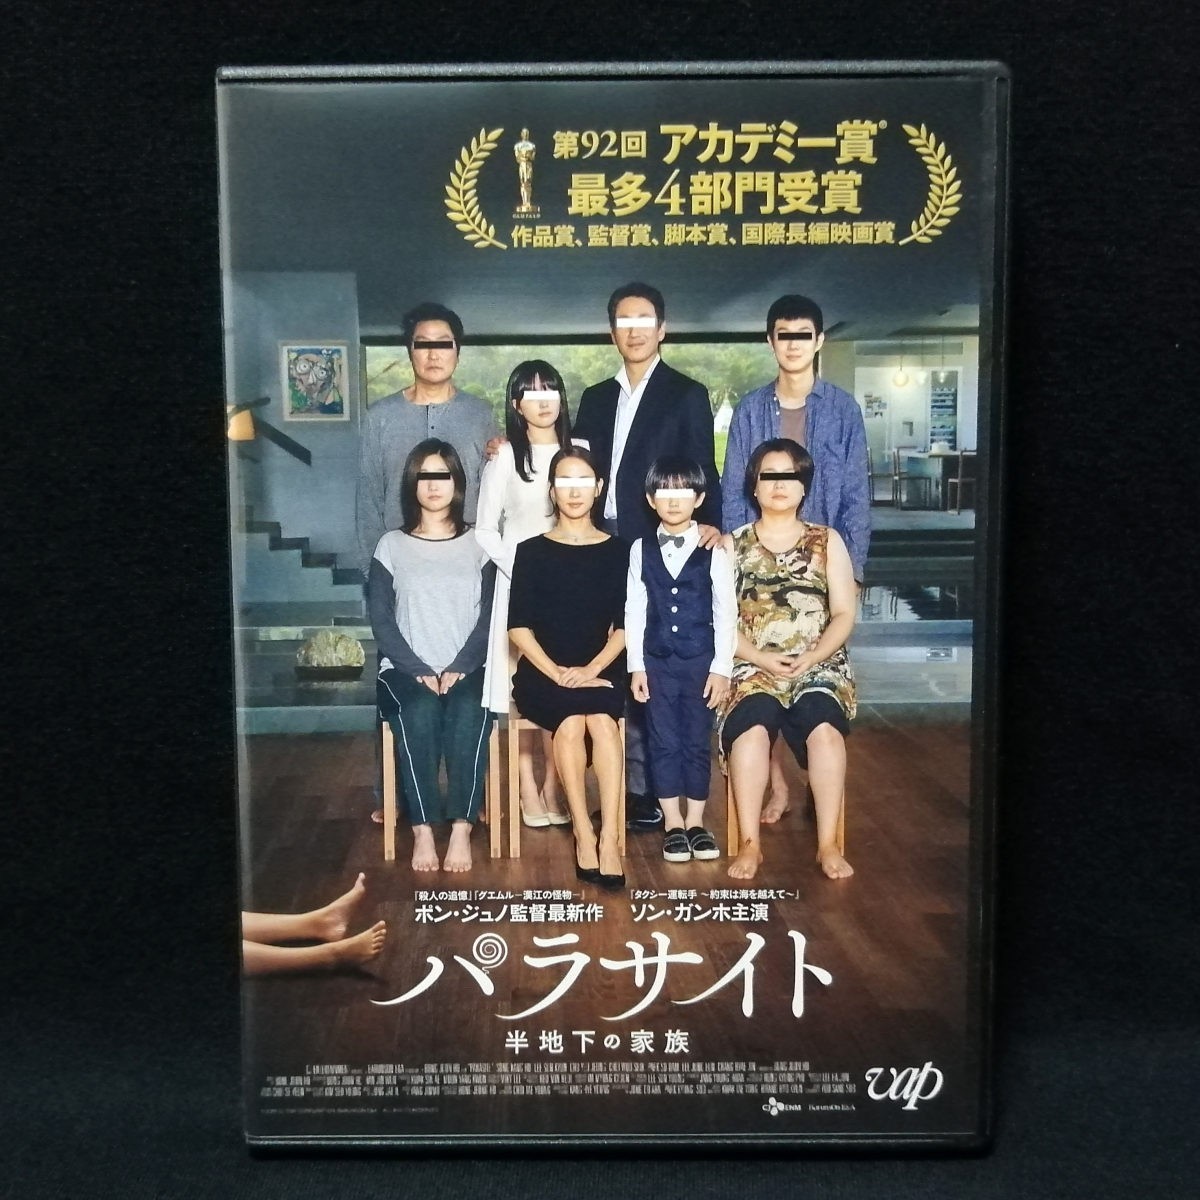 DVD パラサイト 半地下の家族 韓国映画 レンタル版